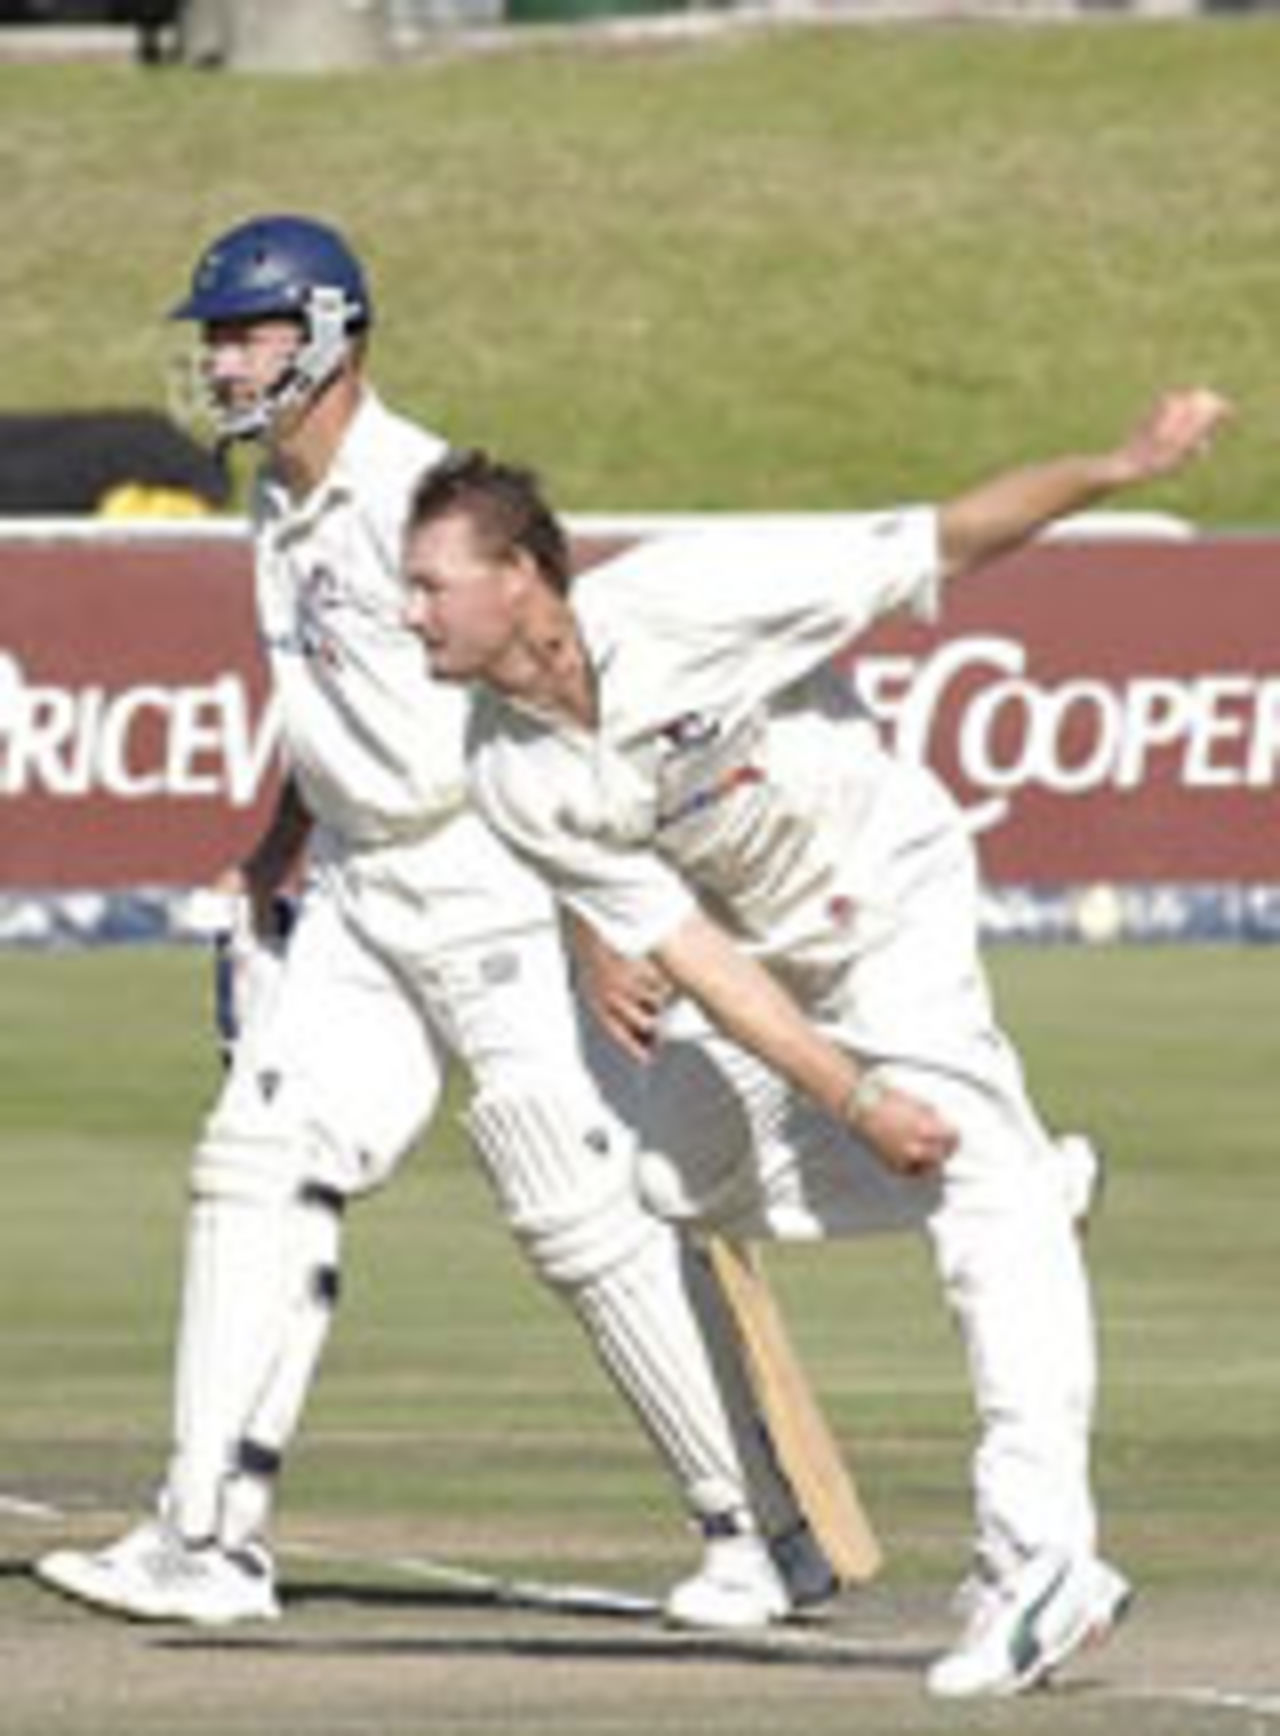 Lance Klusener bowling, Western Province v KwaZulu-Natal, SuperSport Series final, Newlands, April 3, 2004